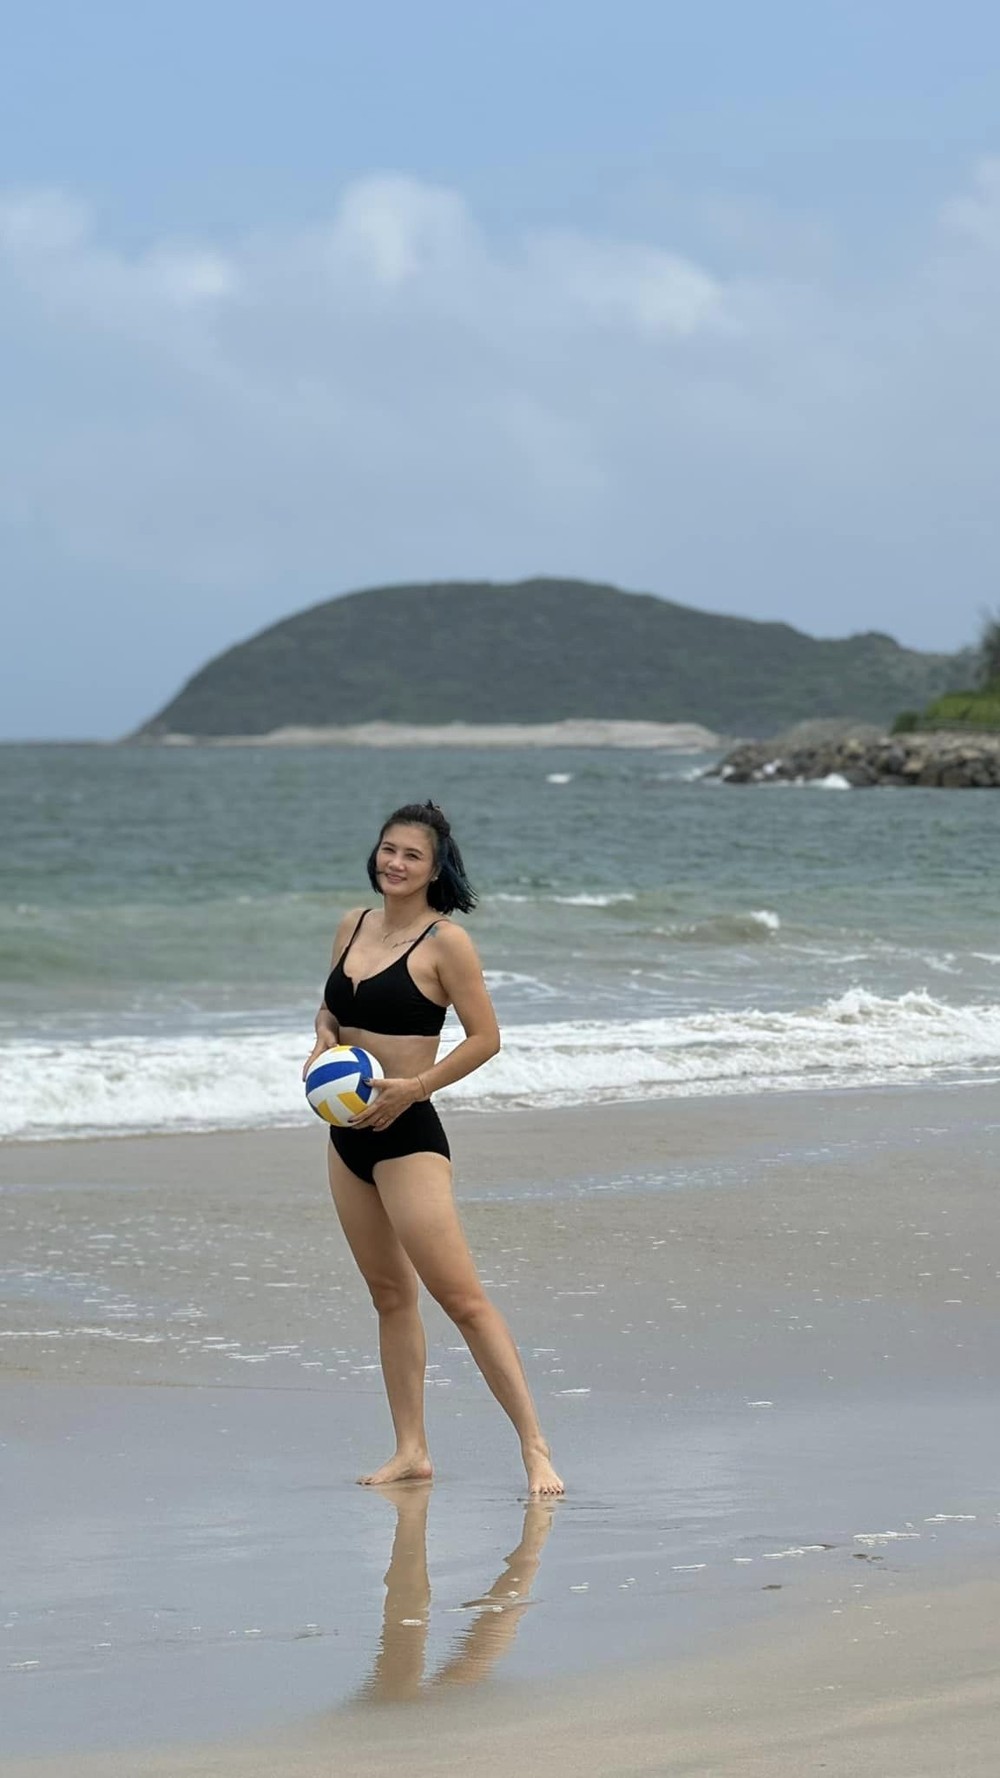 Hoa khôi bóng chuyền Kim Huệ: Diện bikini khoe sắc vóc U45, được khen đẹp quá - Ảnh 2.